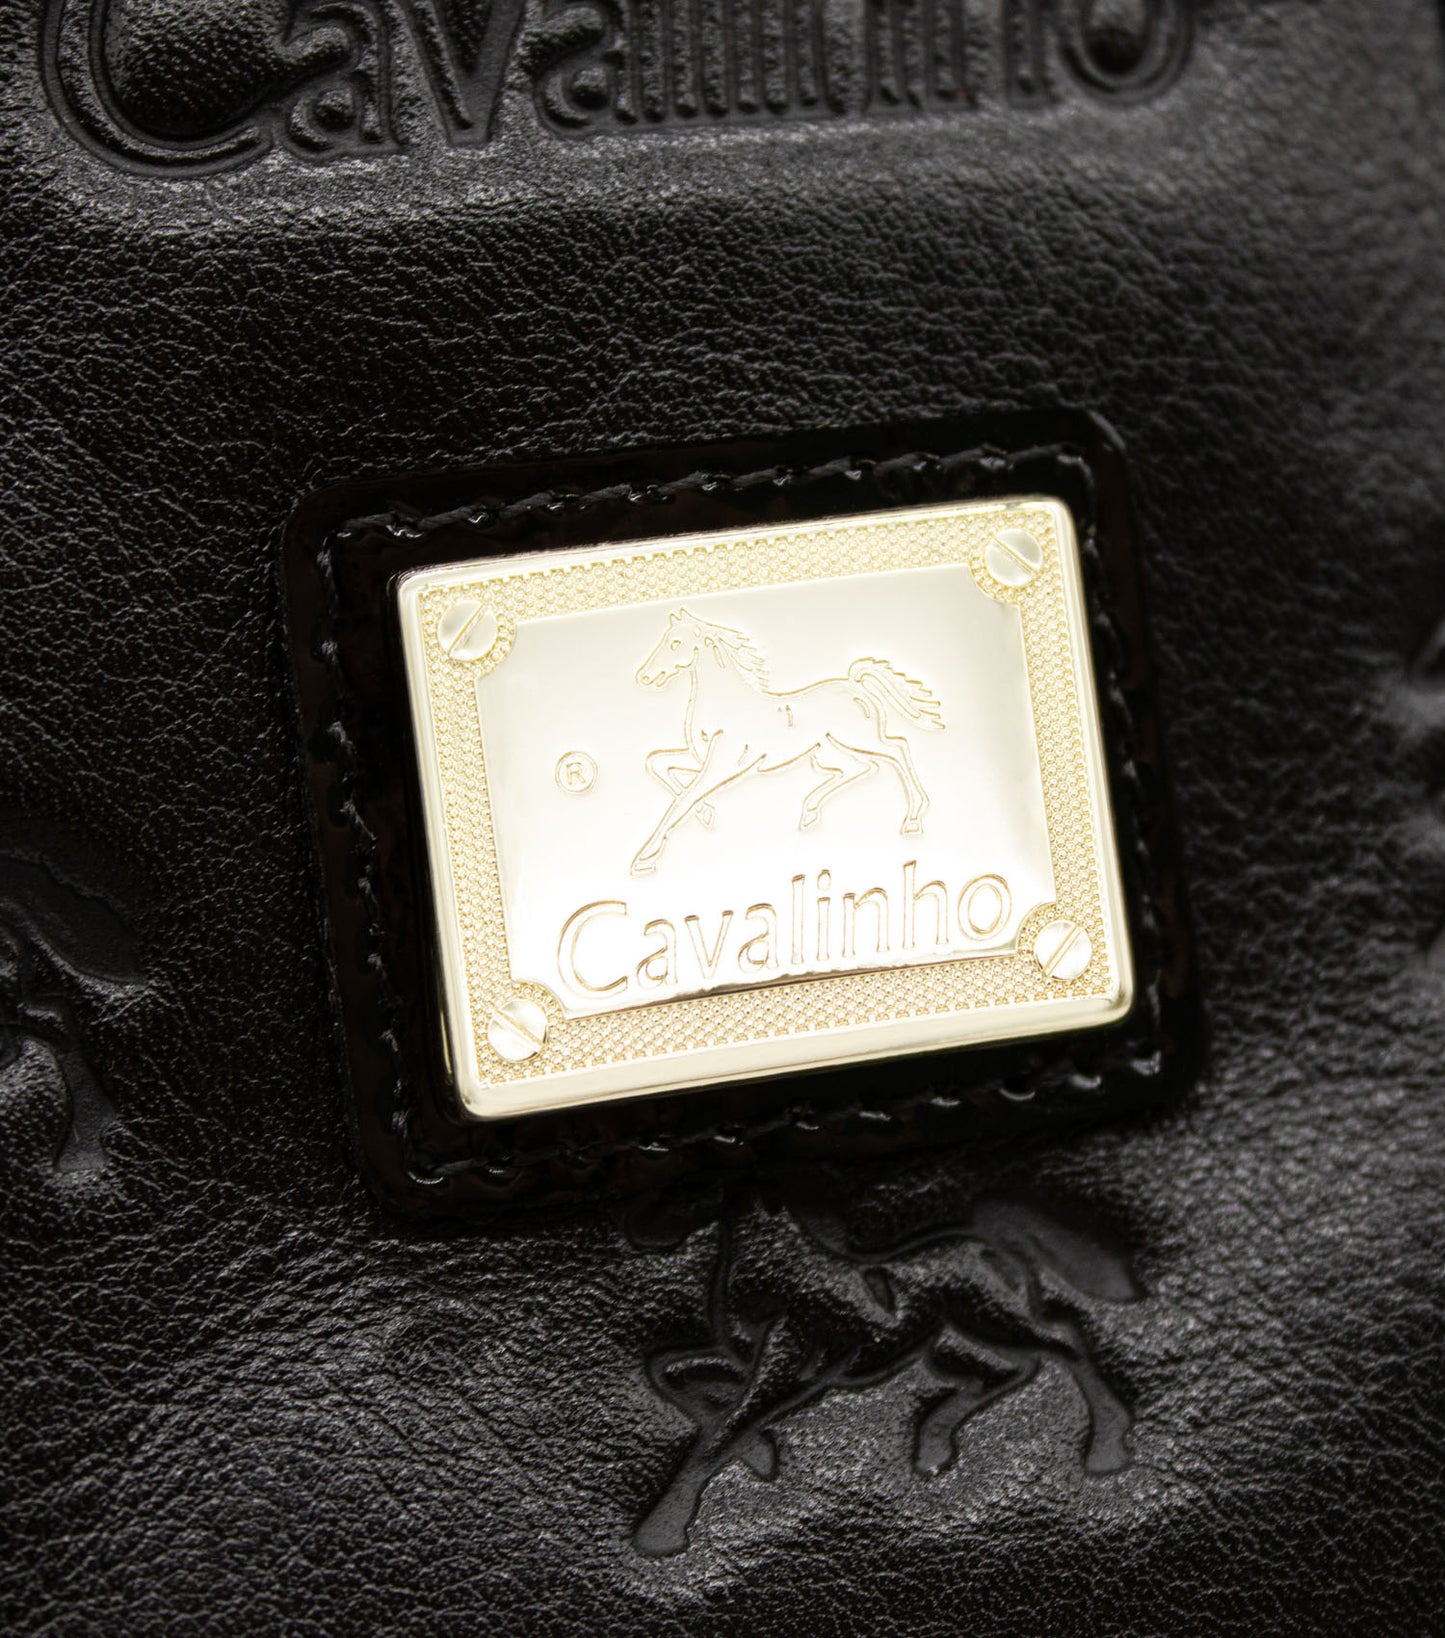 #color_ Black and White | Cavalinho Royal Handbag - Black and White - 18390493.21_P05